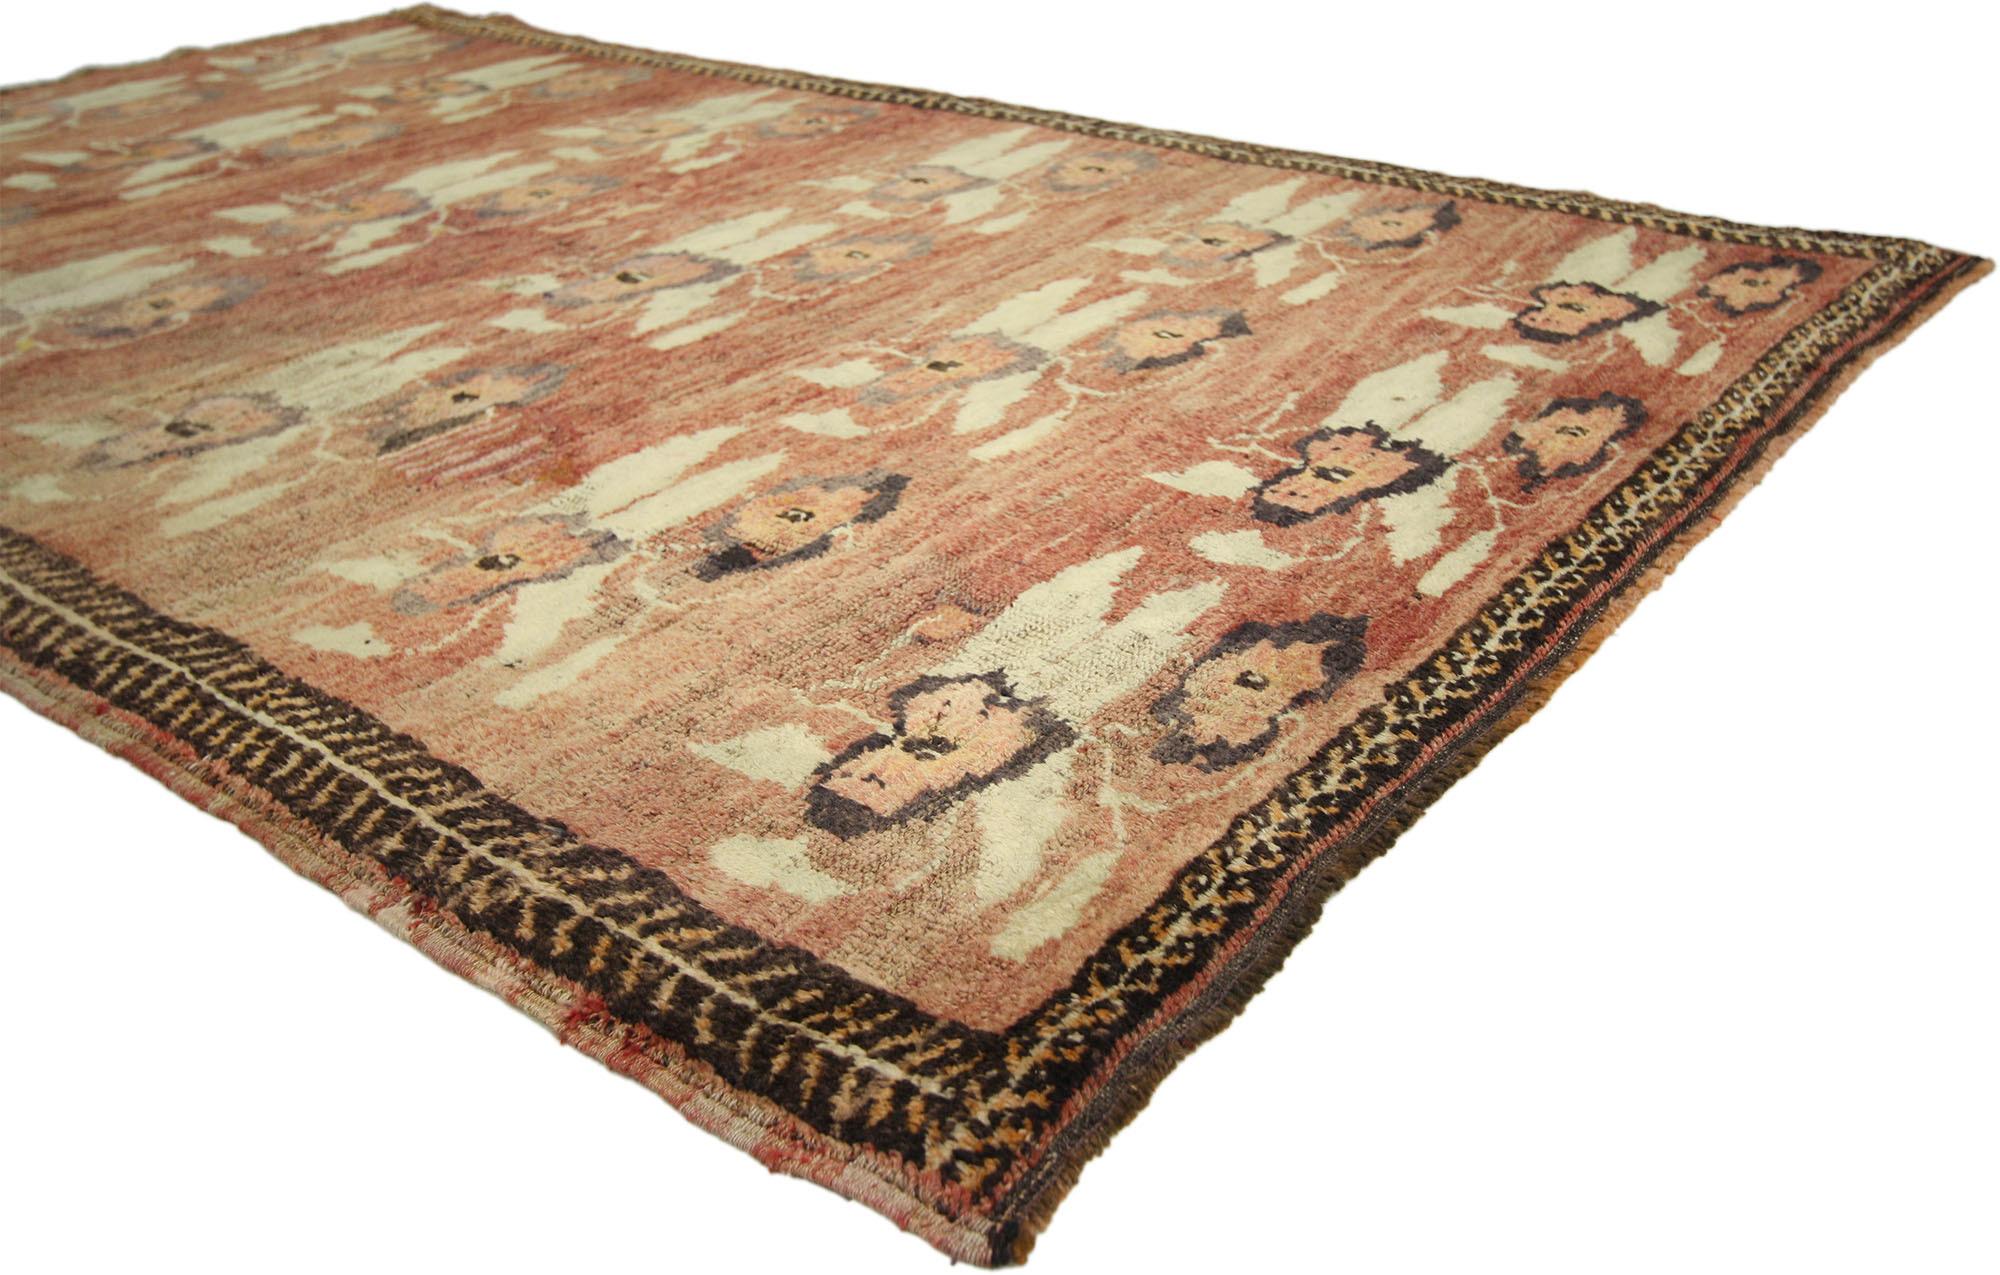 50293 Tapis Oushak turc vintage, 04'03 X 06'08. 
Chaleureux et accueillant avec des connotations romantiques, ce tapis Oushak turc vintage en laine nouée à la main est une vision captivante de la beauté tissée. Le motif floral et les couleurs